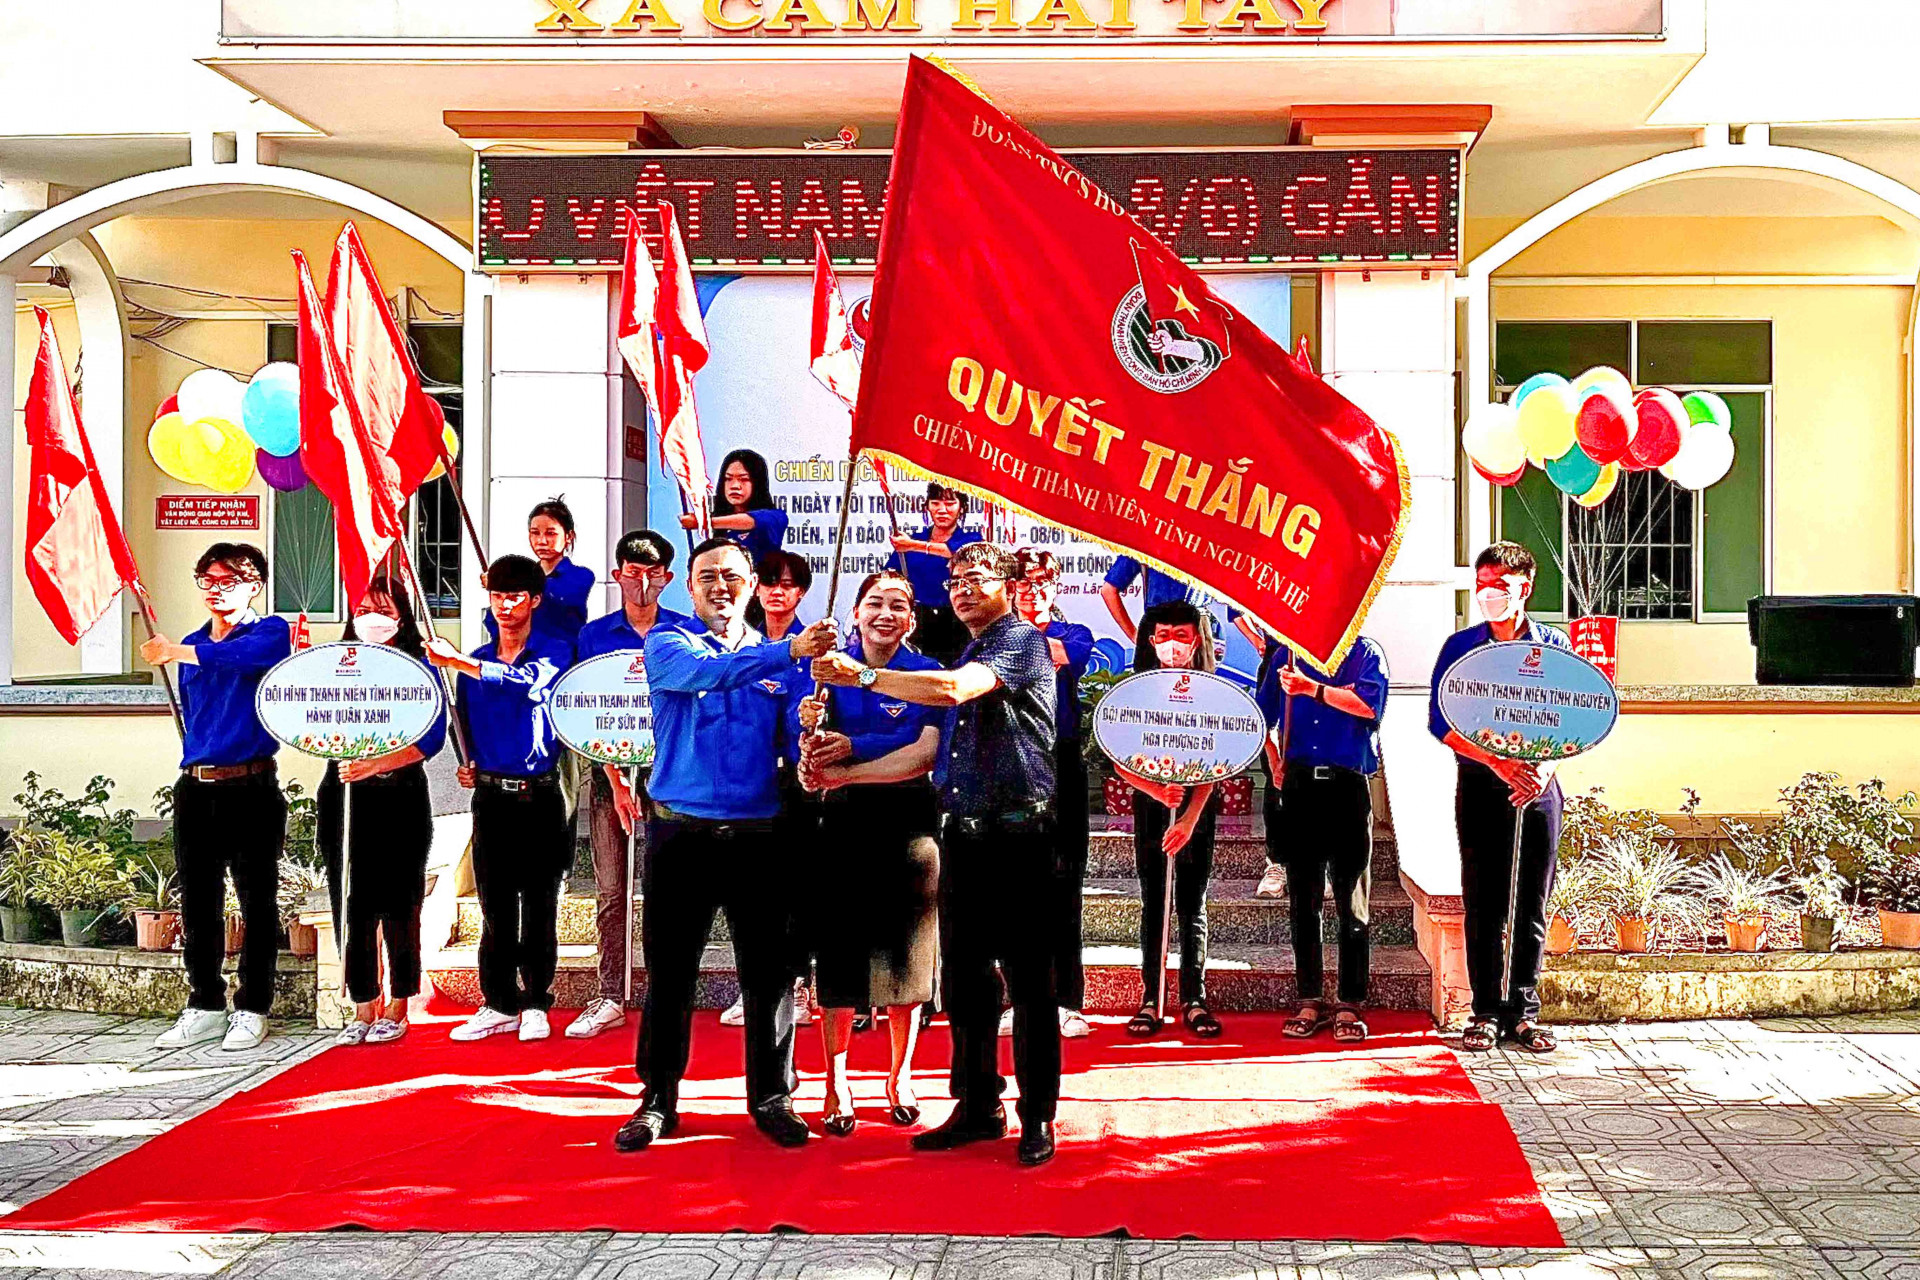 Chiến dịch Thanh niên tình nguyện: Chương trình Thanh niên tình nguyện được triển khai rộng rãi ở Việt Nam và đã có sự tham gia đông đảo của các thanh niên. Hình ảnh liên quan sẽ cho bạn thấy các thanh niên tình nguyện giúp đỡ cộng đồng với những hoạt động từ thiện, đóng góp cho xã hội.